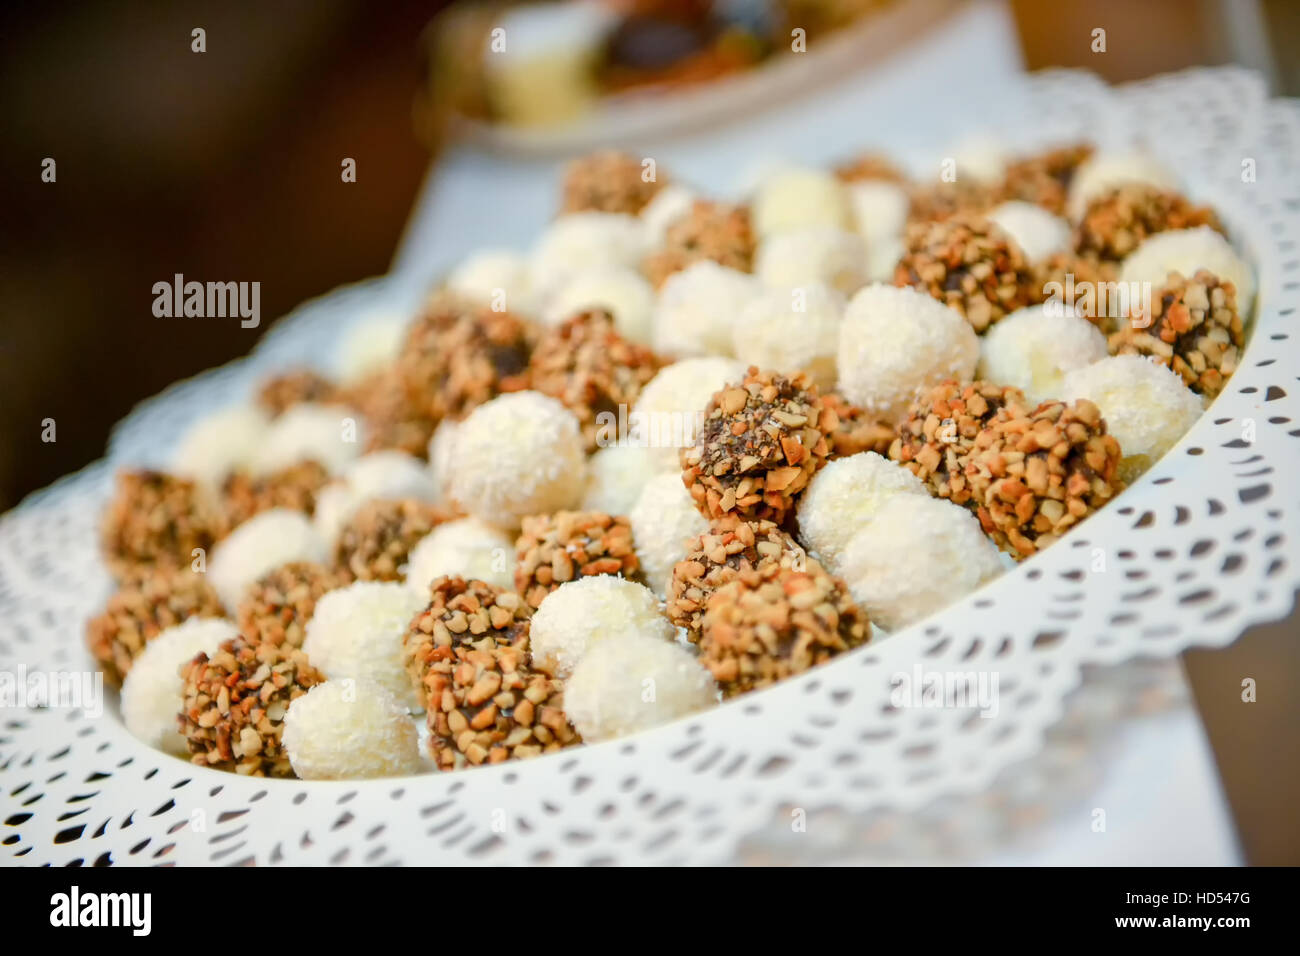 Le sfere di torta, noce di cocco e le nocciole con luce naturale Foto Stock